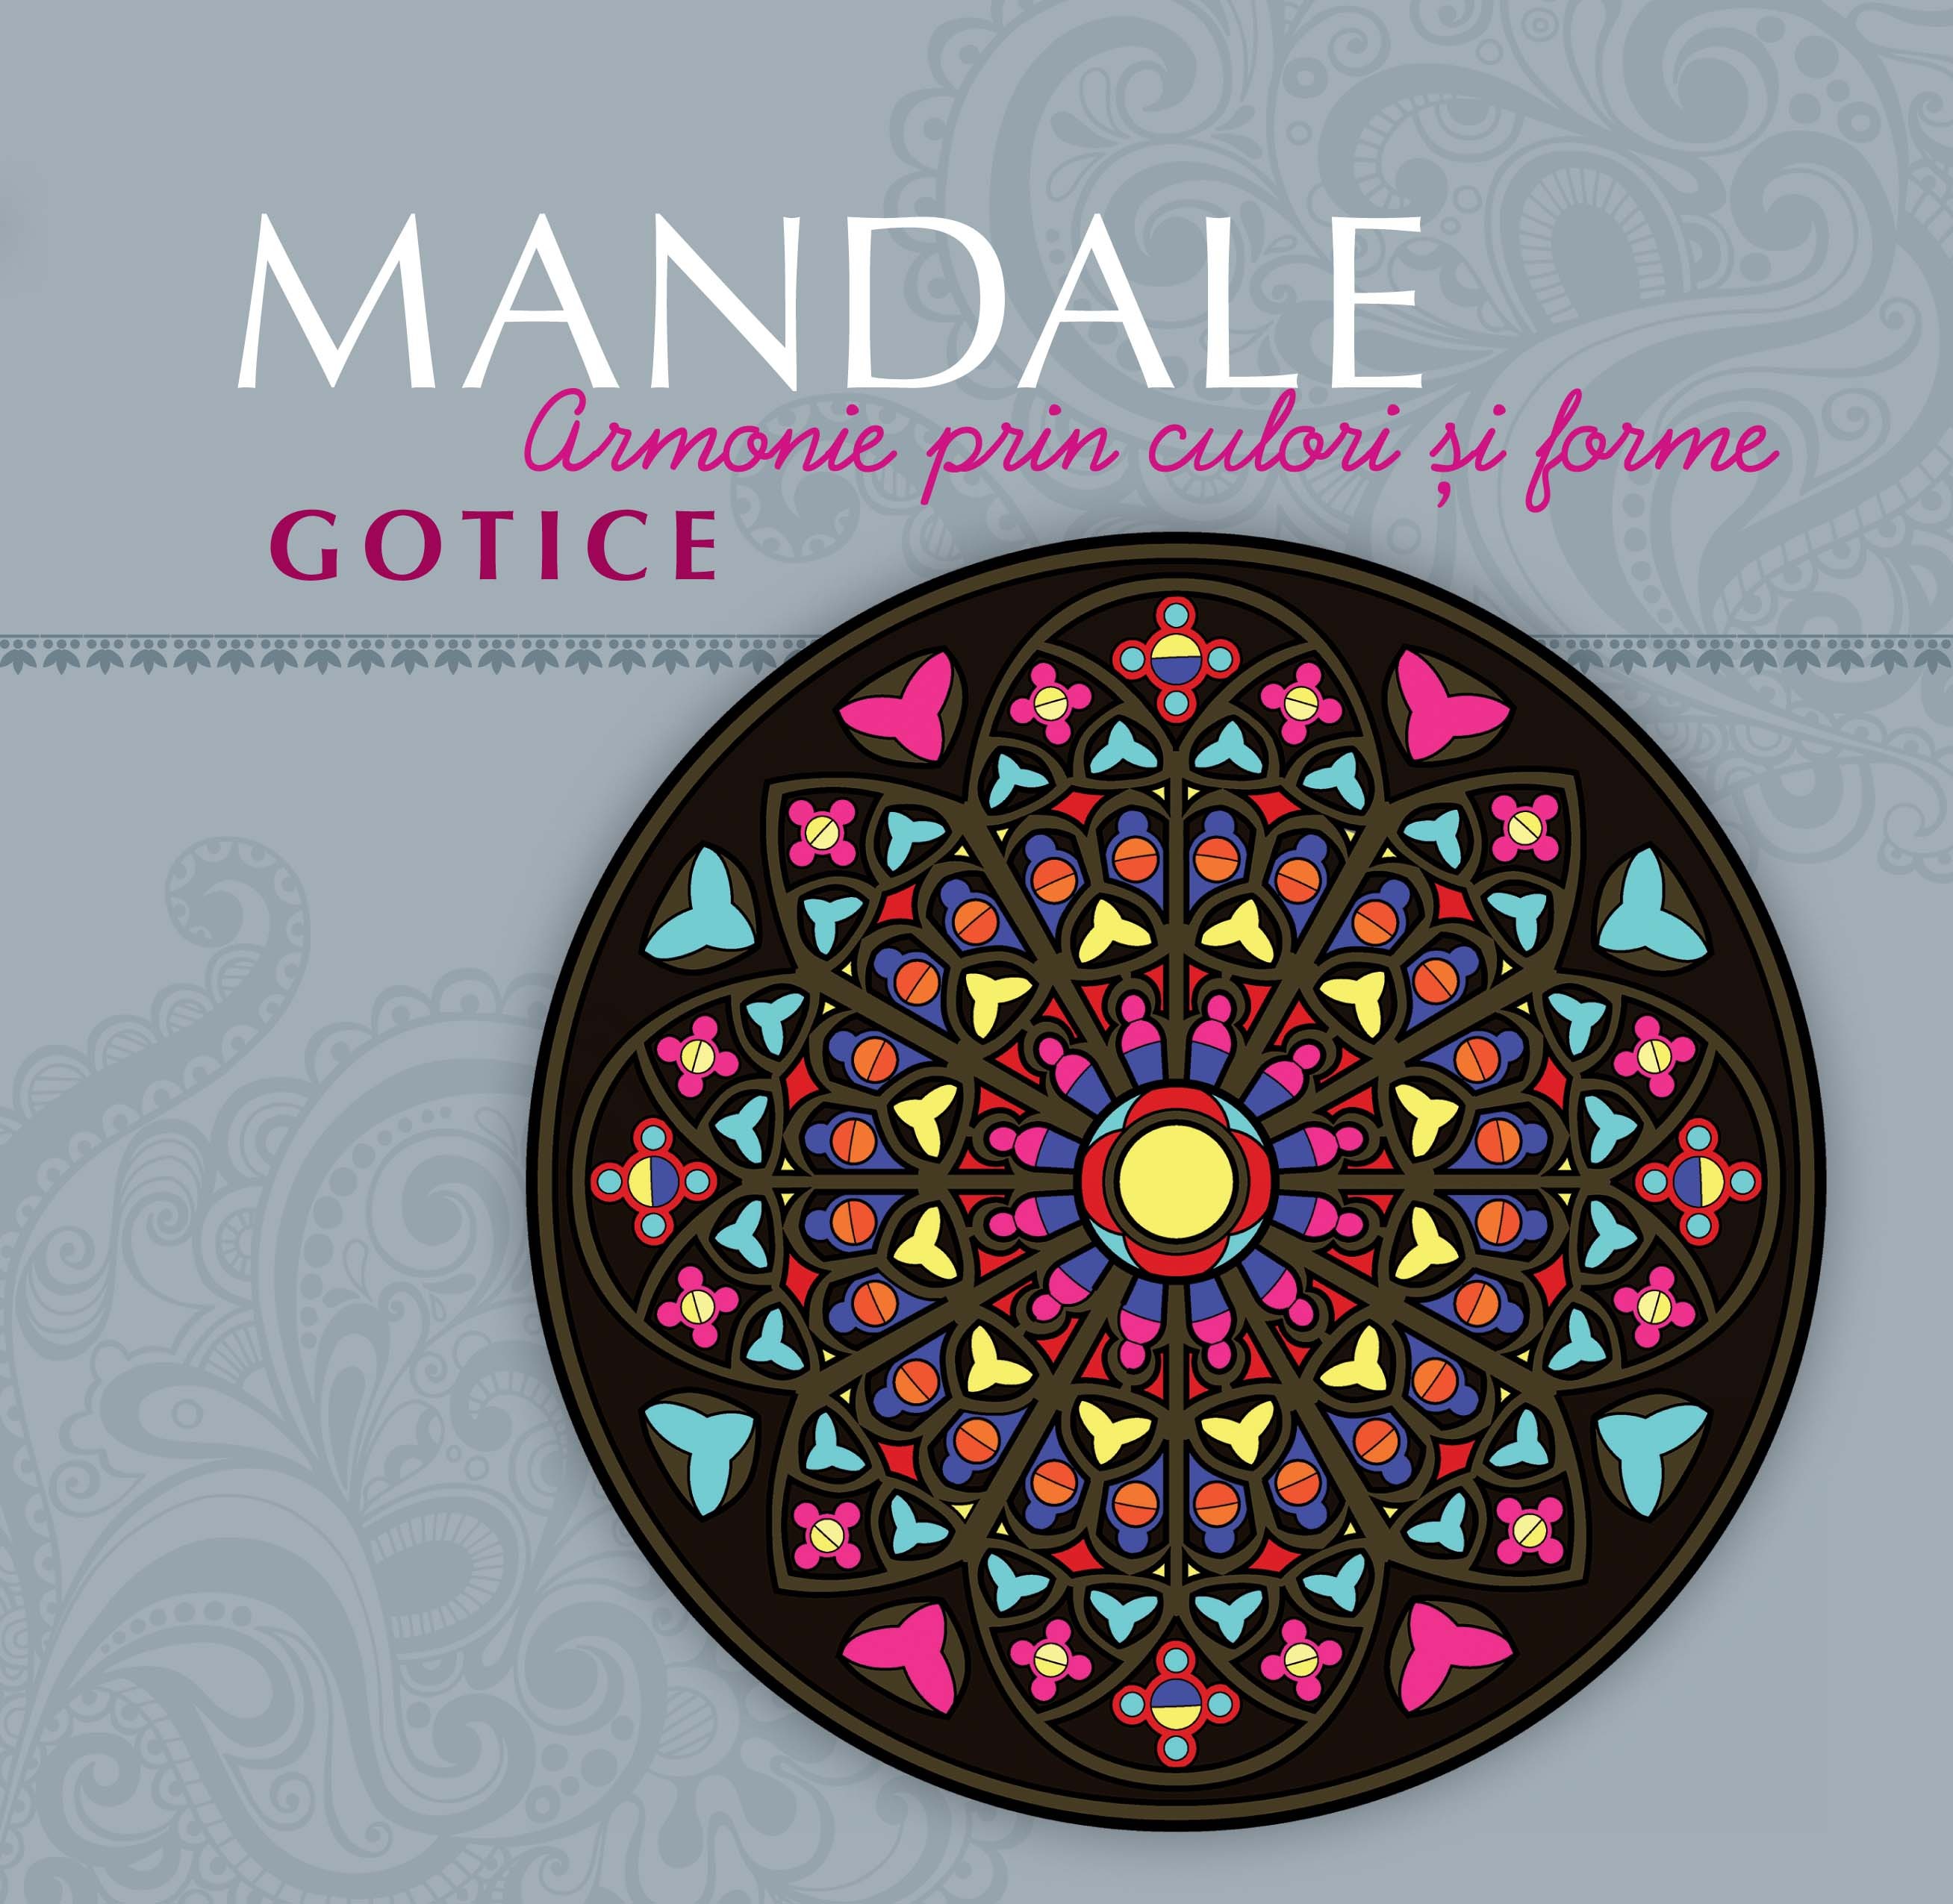 Mandale Gotice - Armonie prin culori si forme